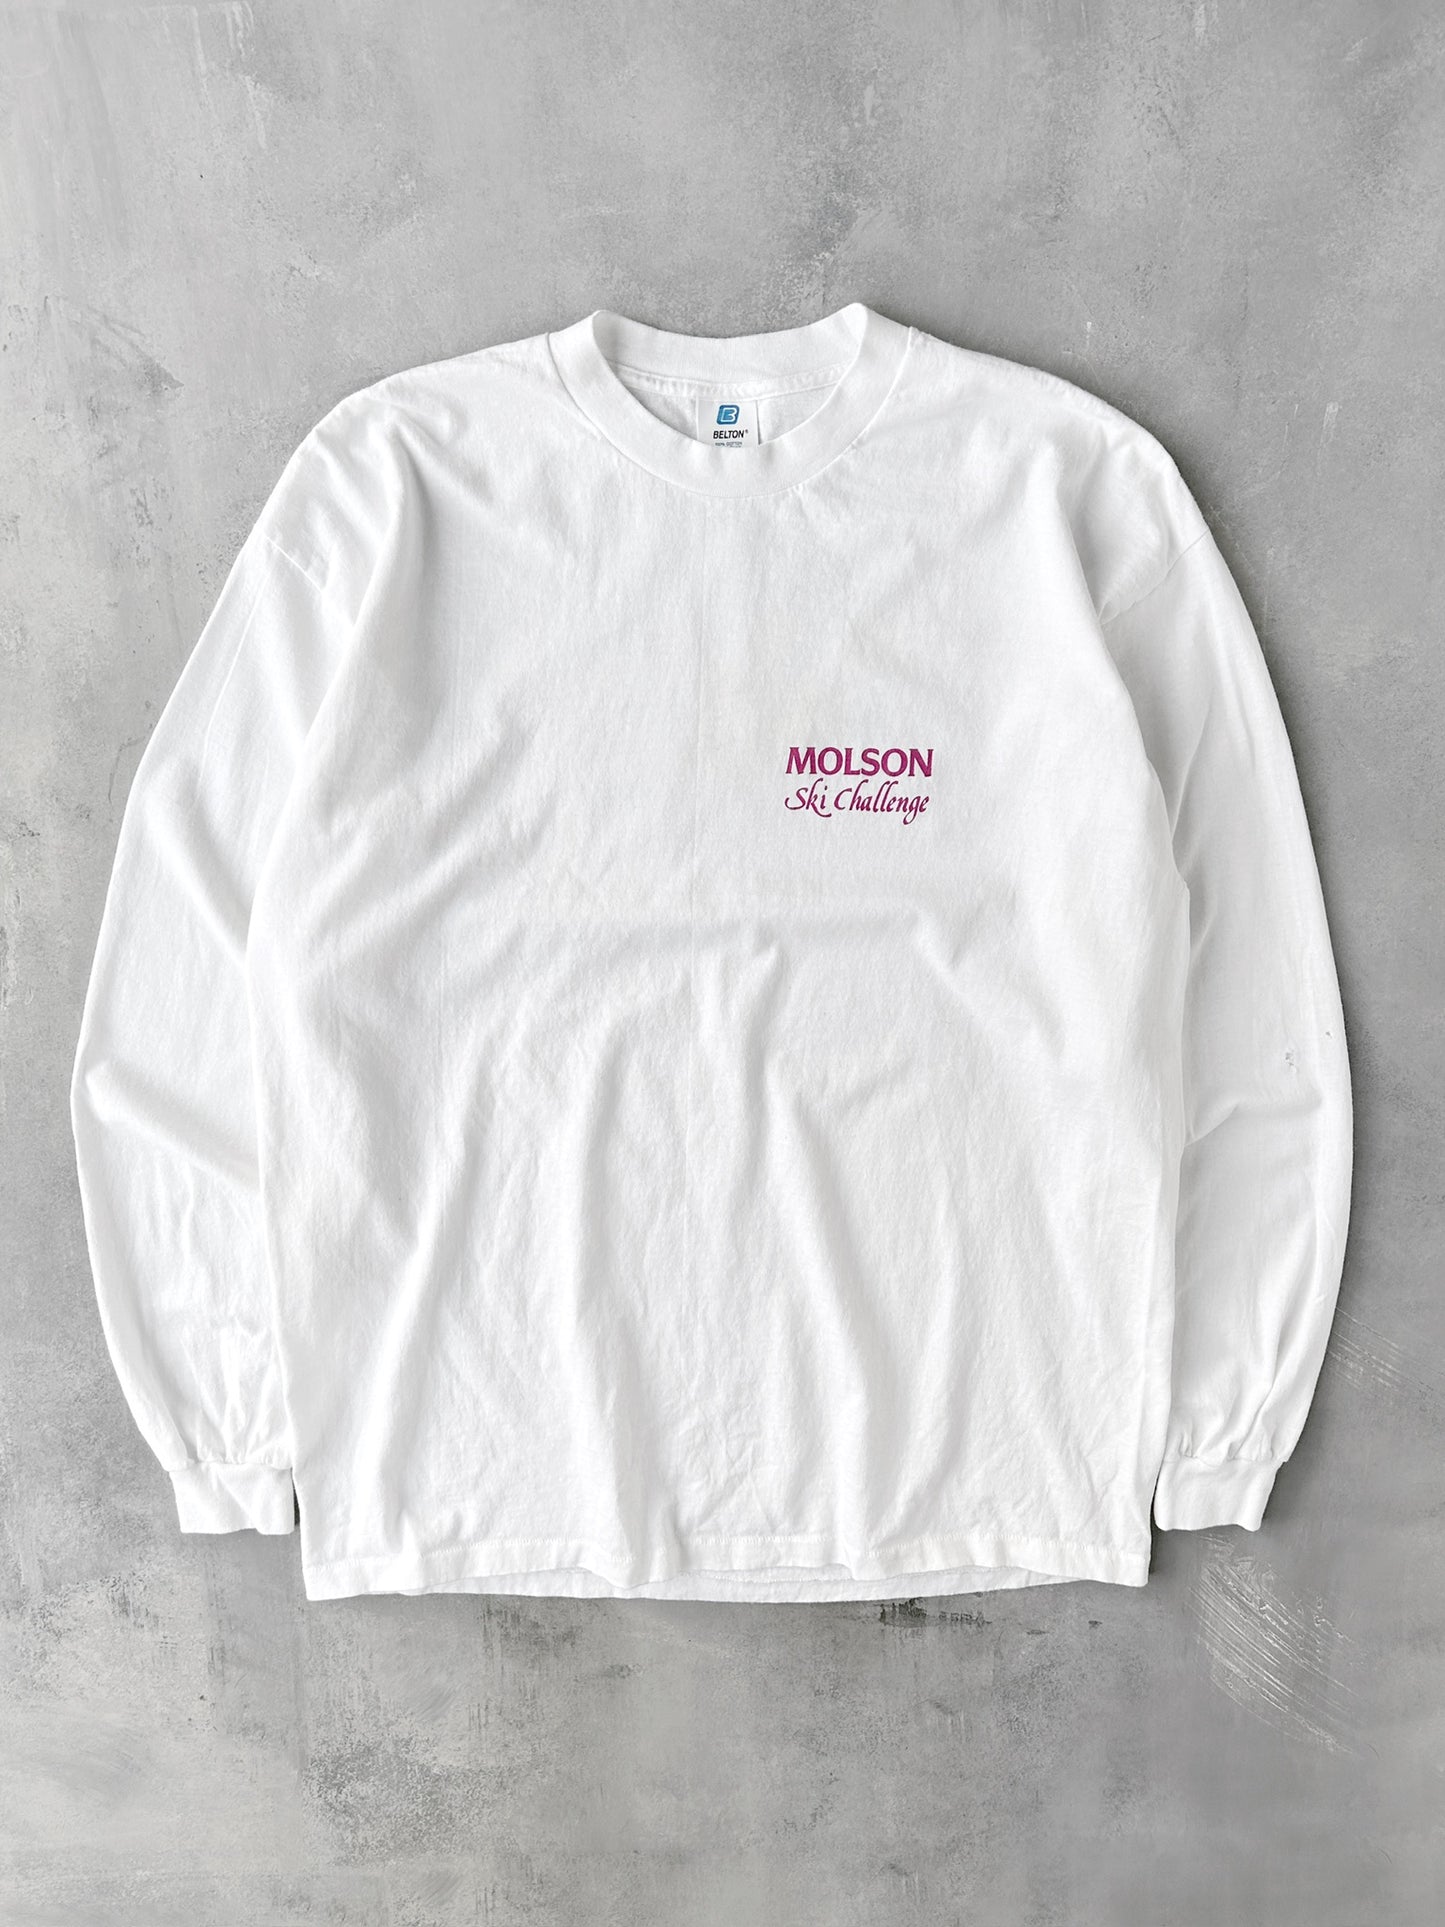 Molson Ski Challenge T-Shirt 90's - XL